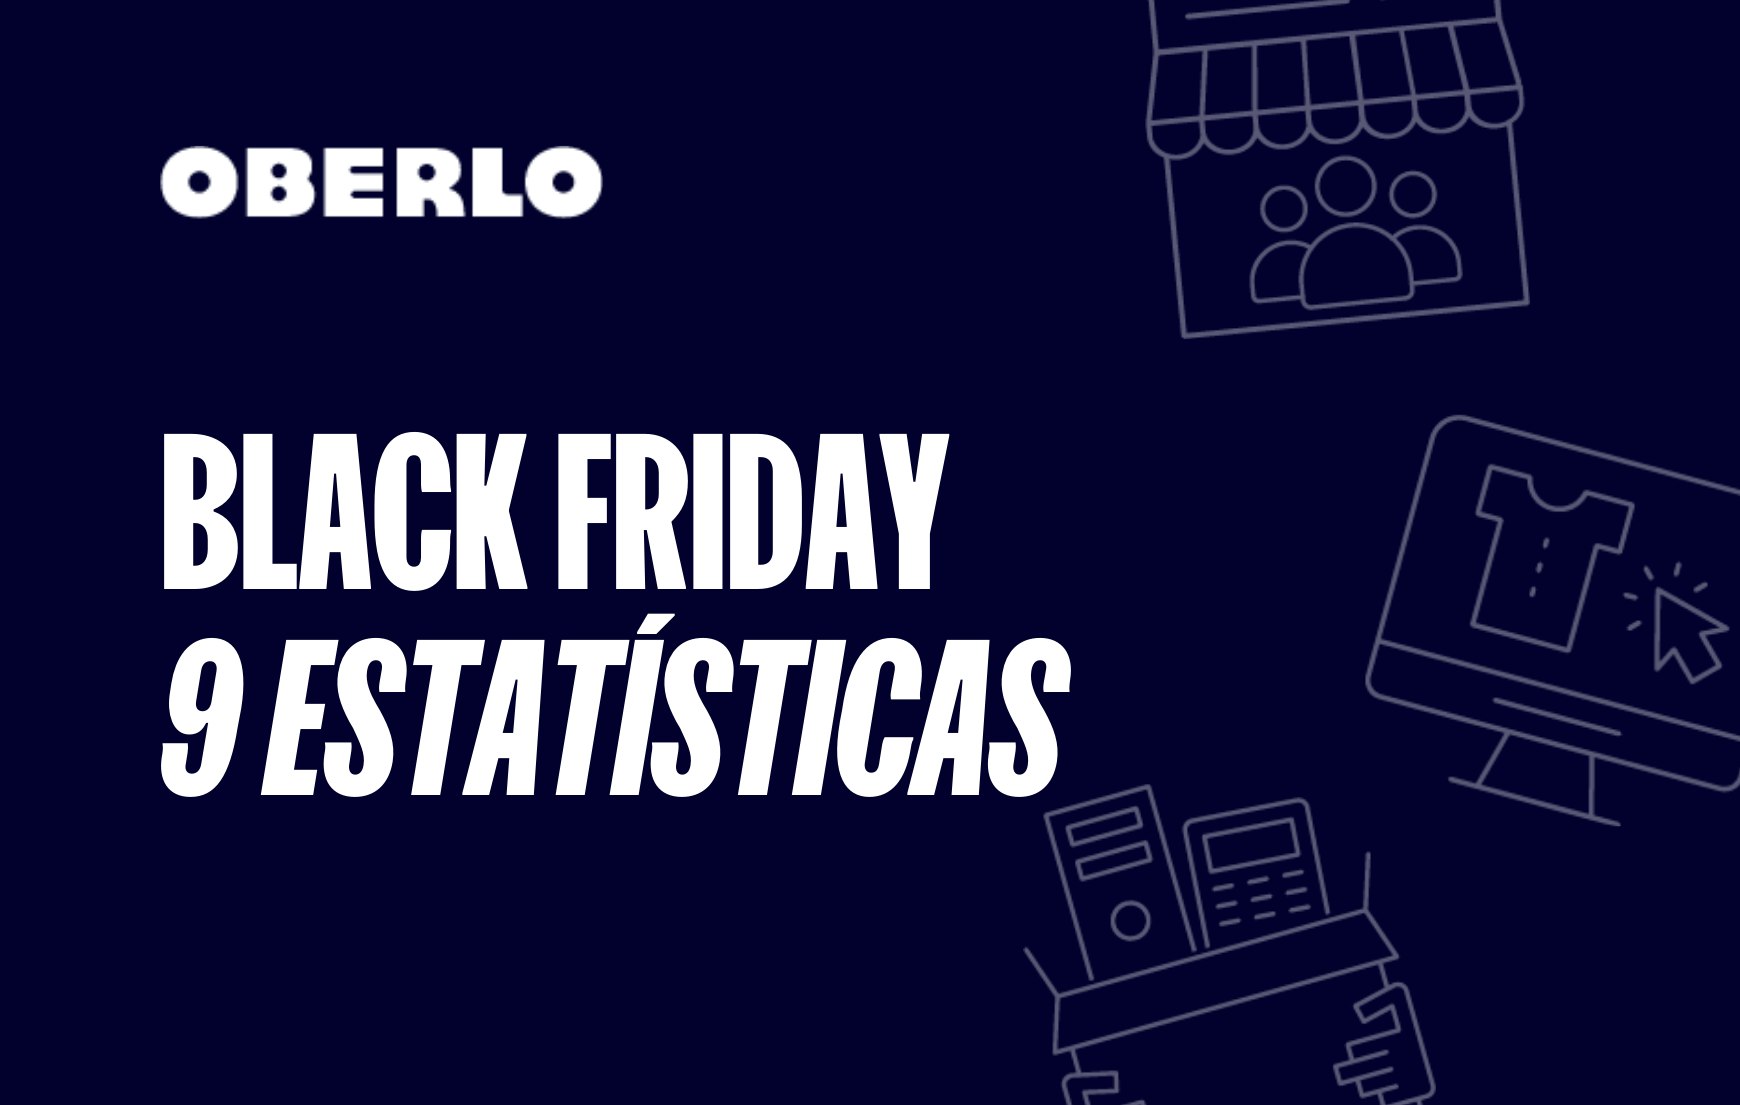 Dados Black Friday: 9 estatísticas que mostram a Black Friday em números